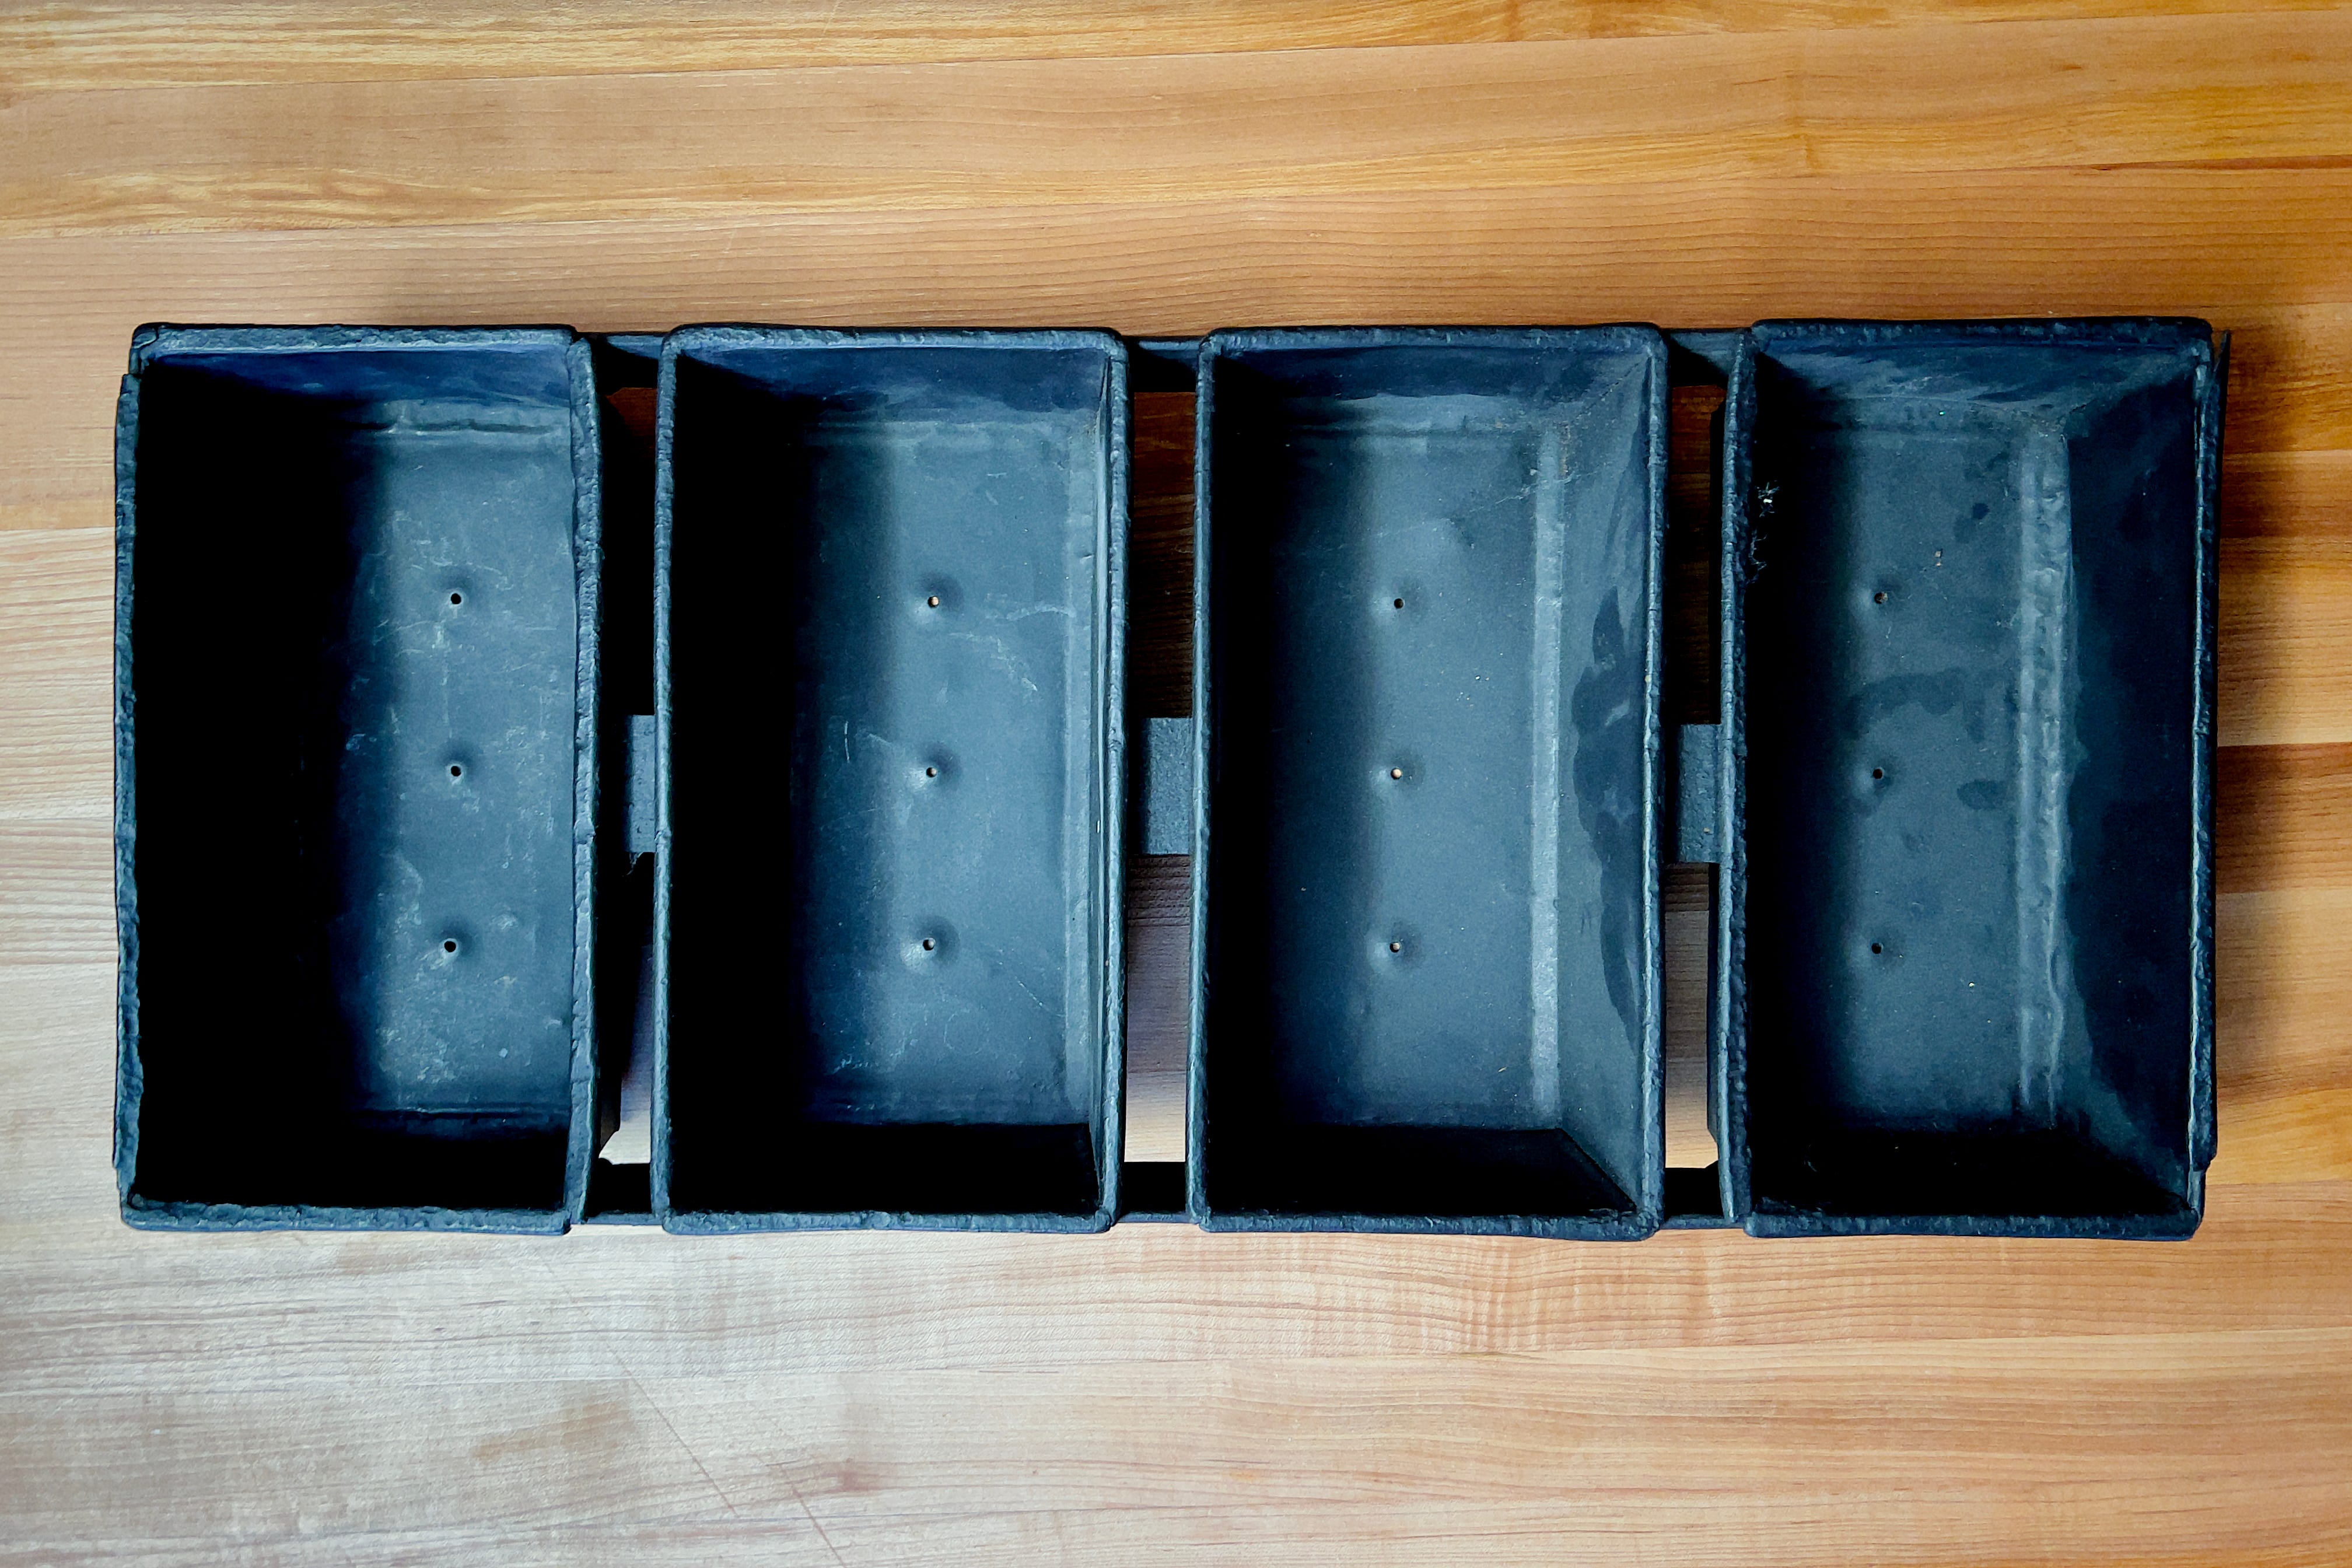 Chicago Metallic Mini Loaf Pans - Set of 4